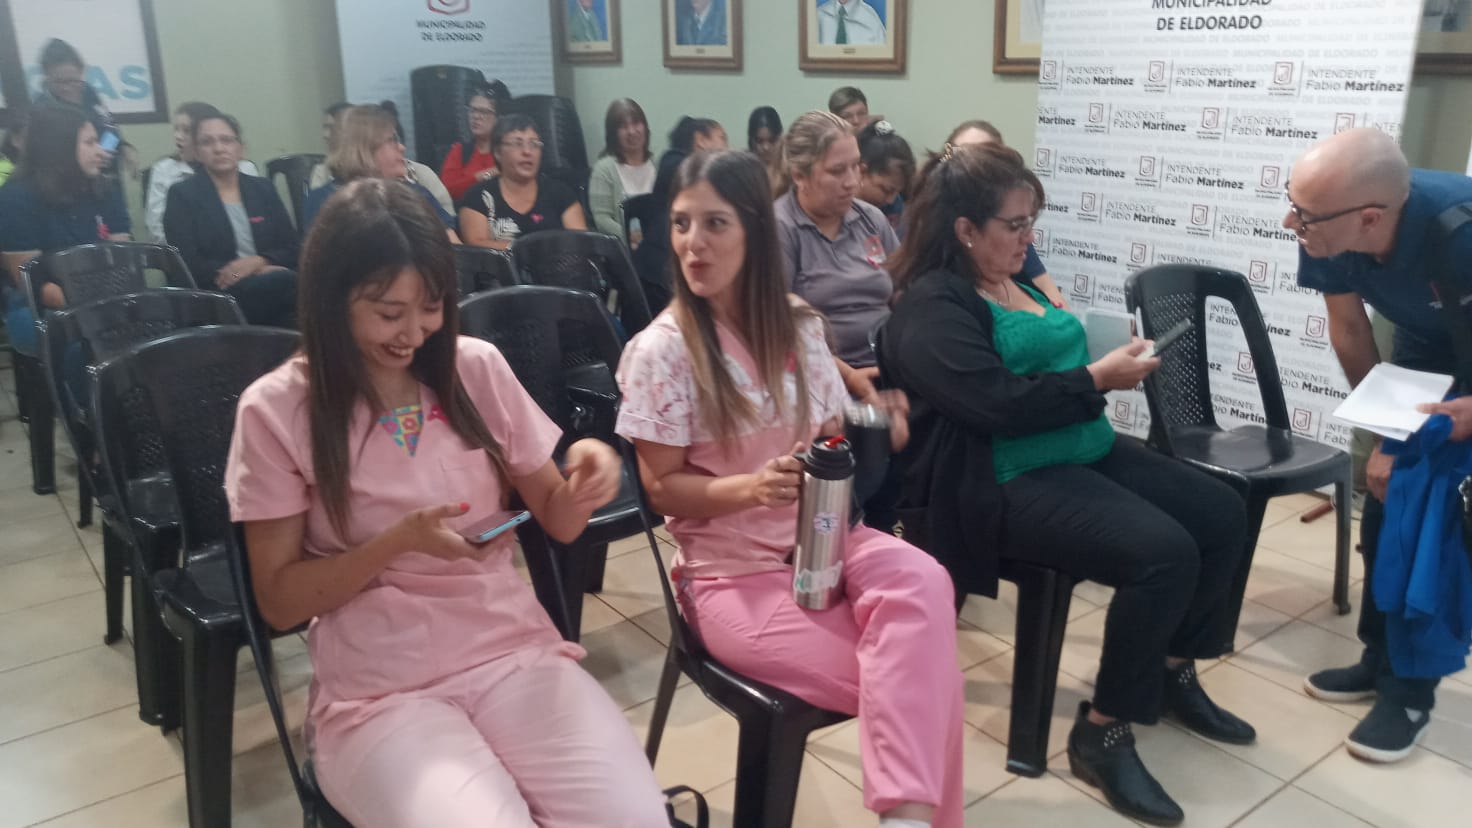 Realizaron una capacitación de "Diagnóstico precoz de cáncer de mamas" en la Municipalidad